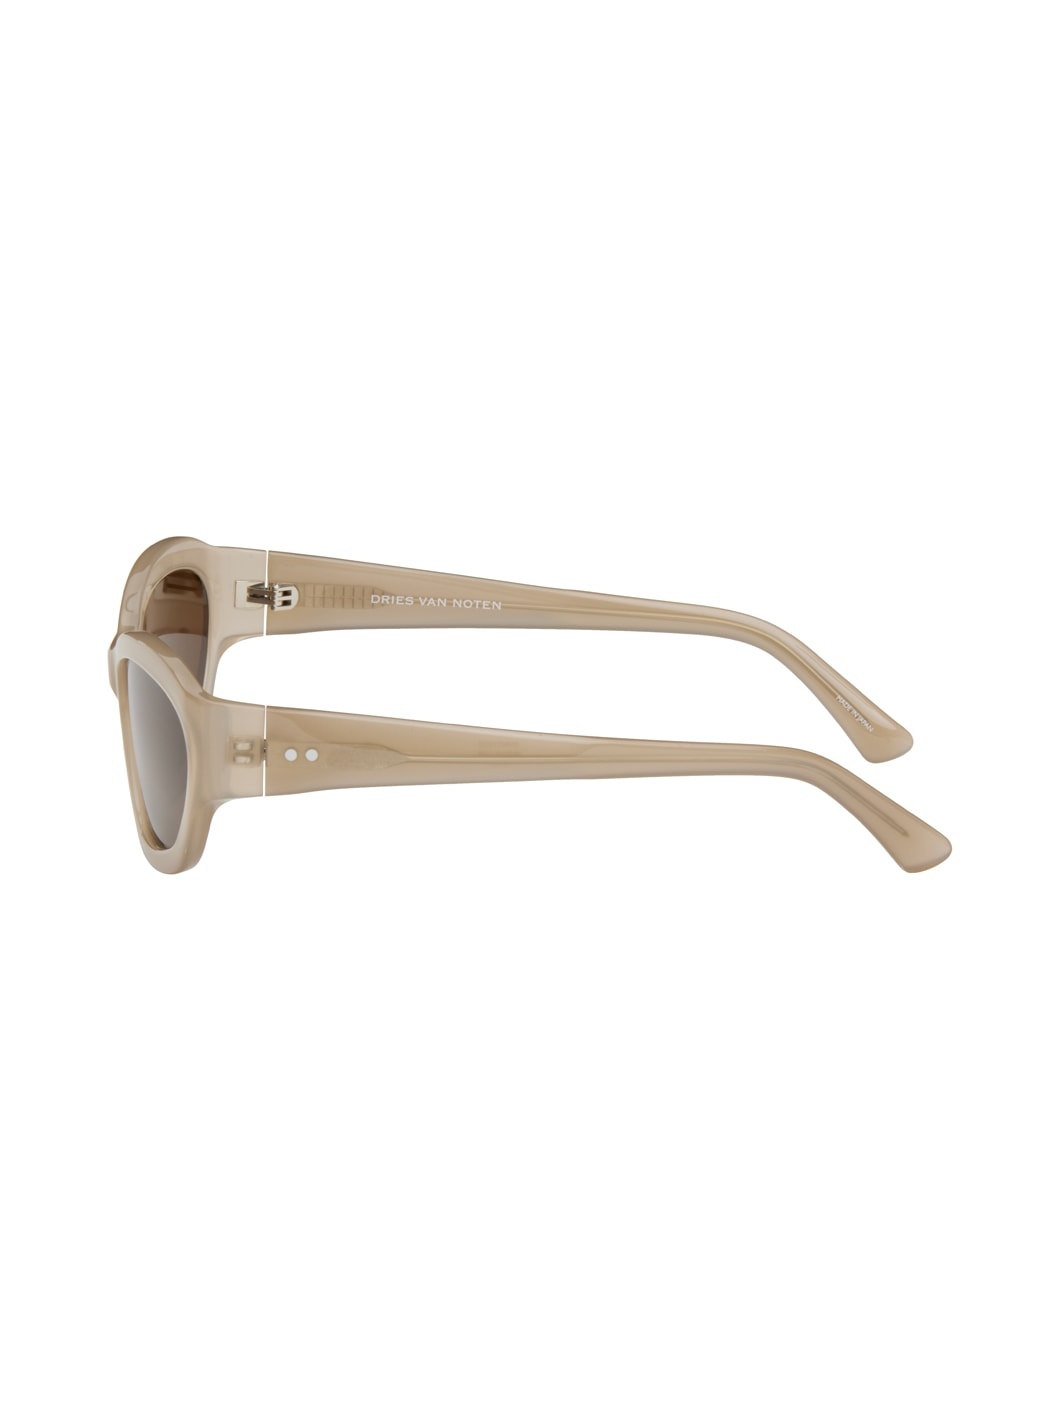 Taupe Linda Farrow Edition Goggle Sunglasses - 3